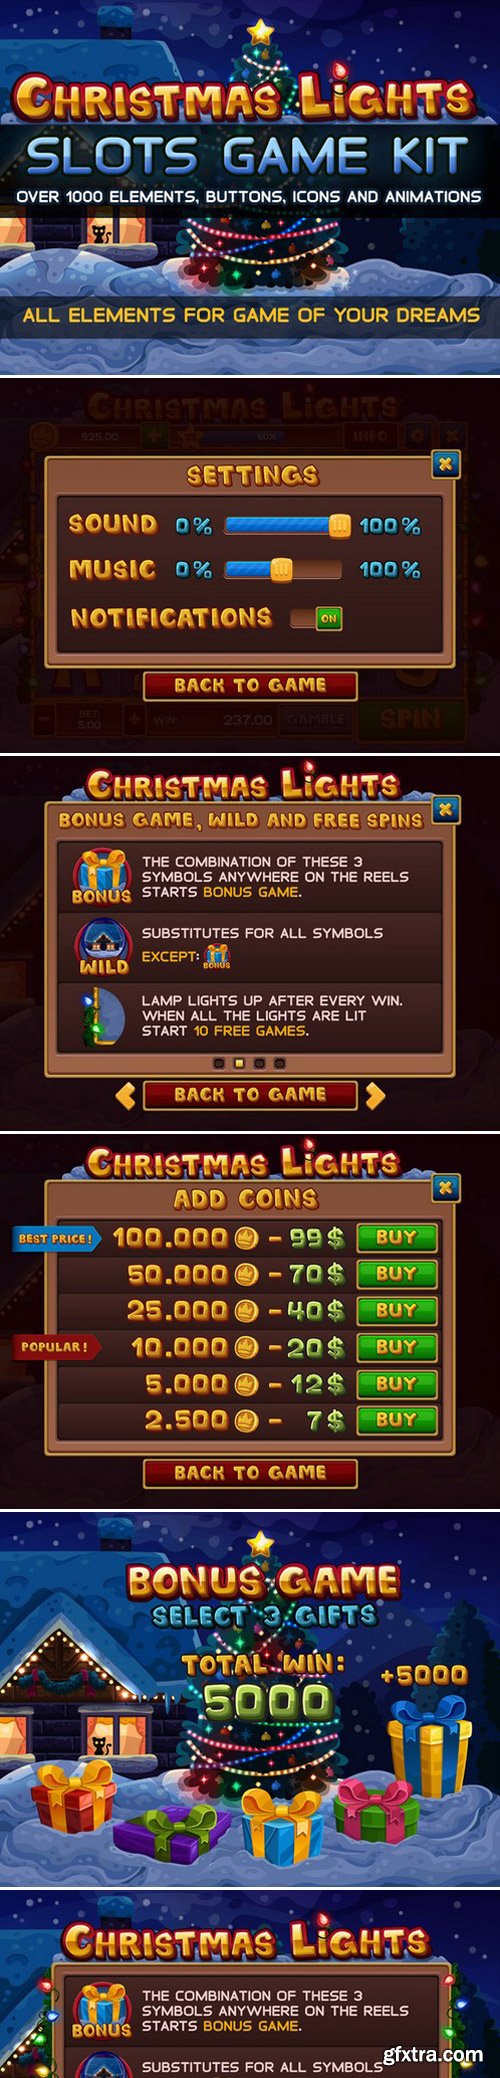 CM - Christmas lights slots game kit 431548